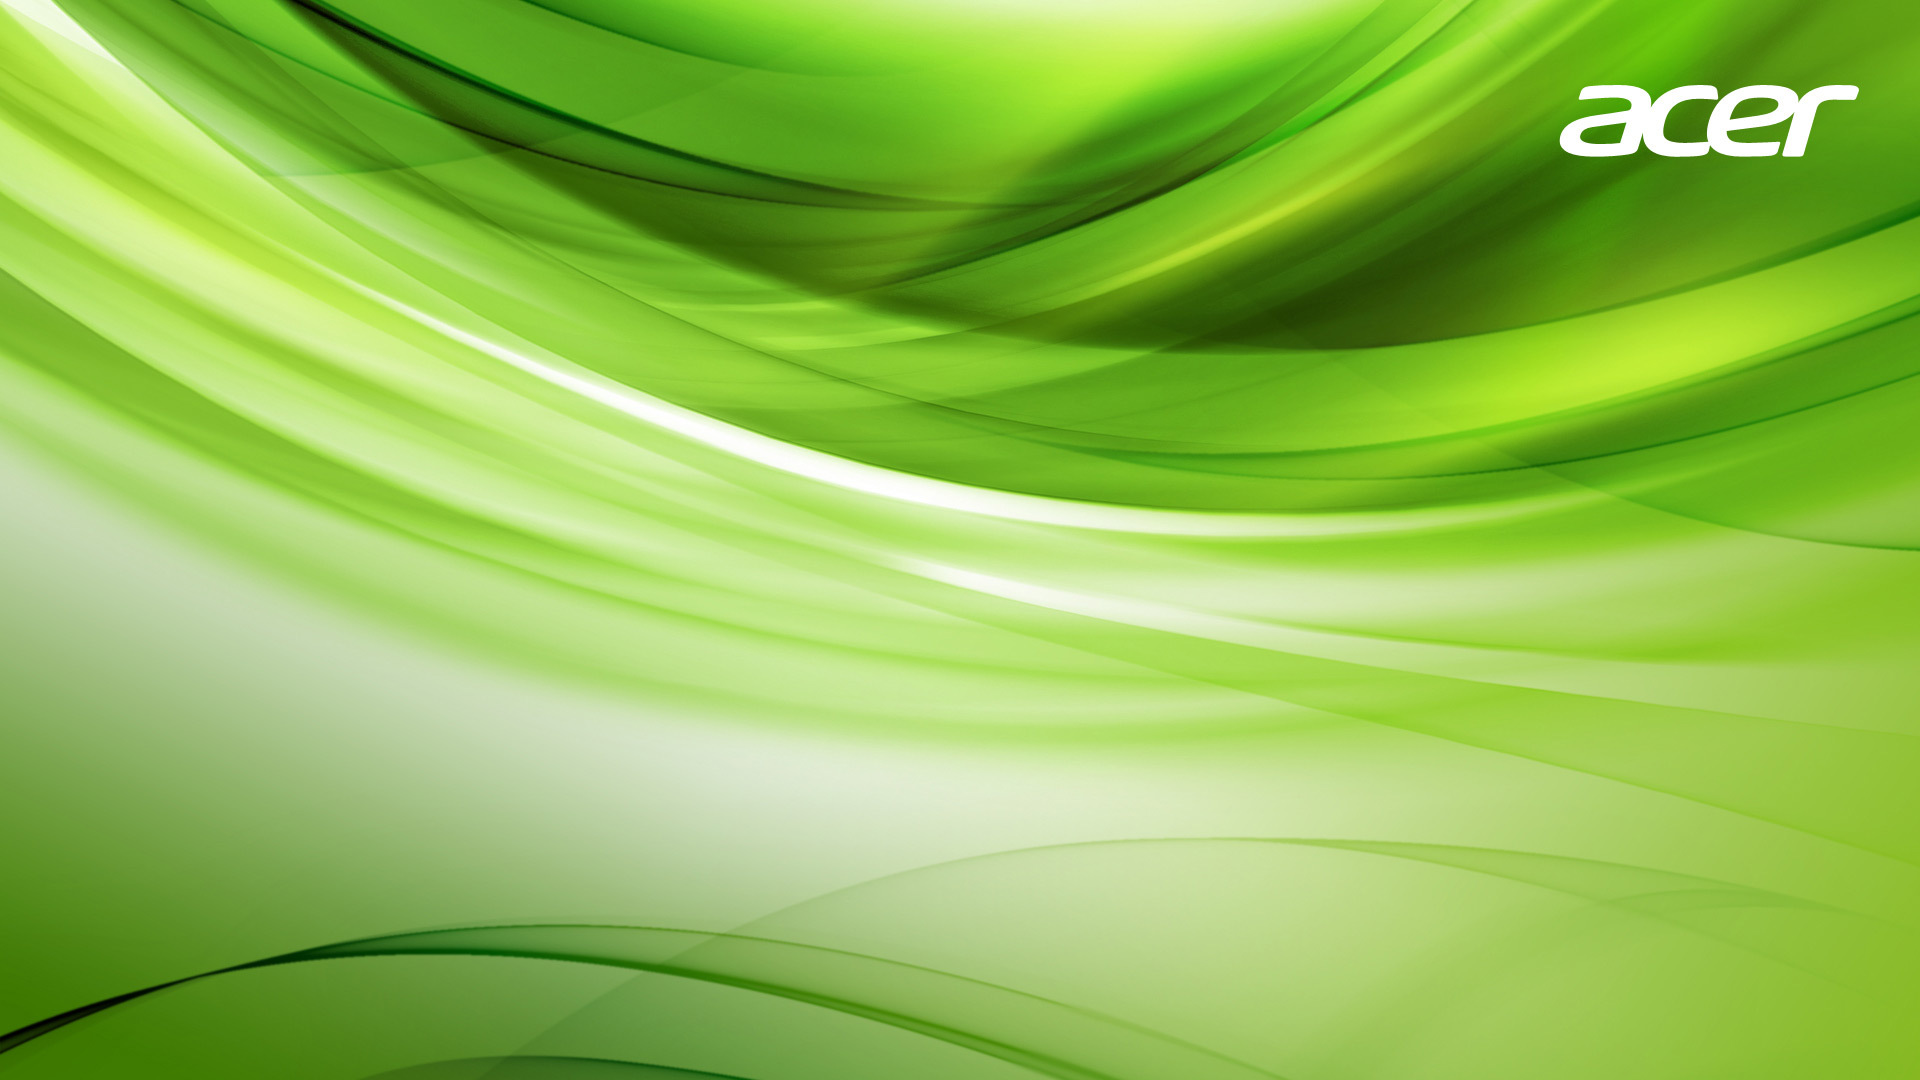 Acer acer green screensaver wallpaper   ForWallpapercom